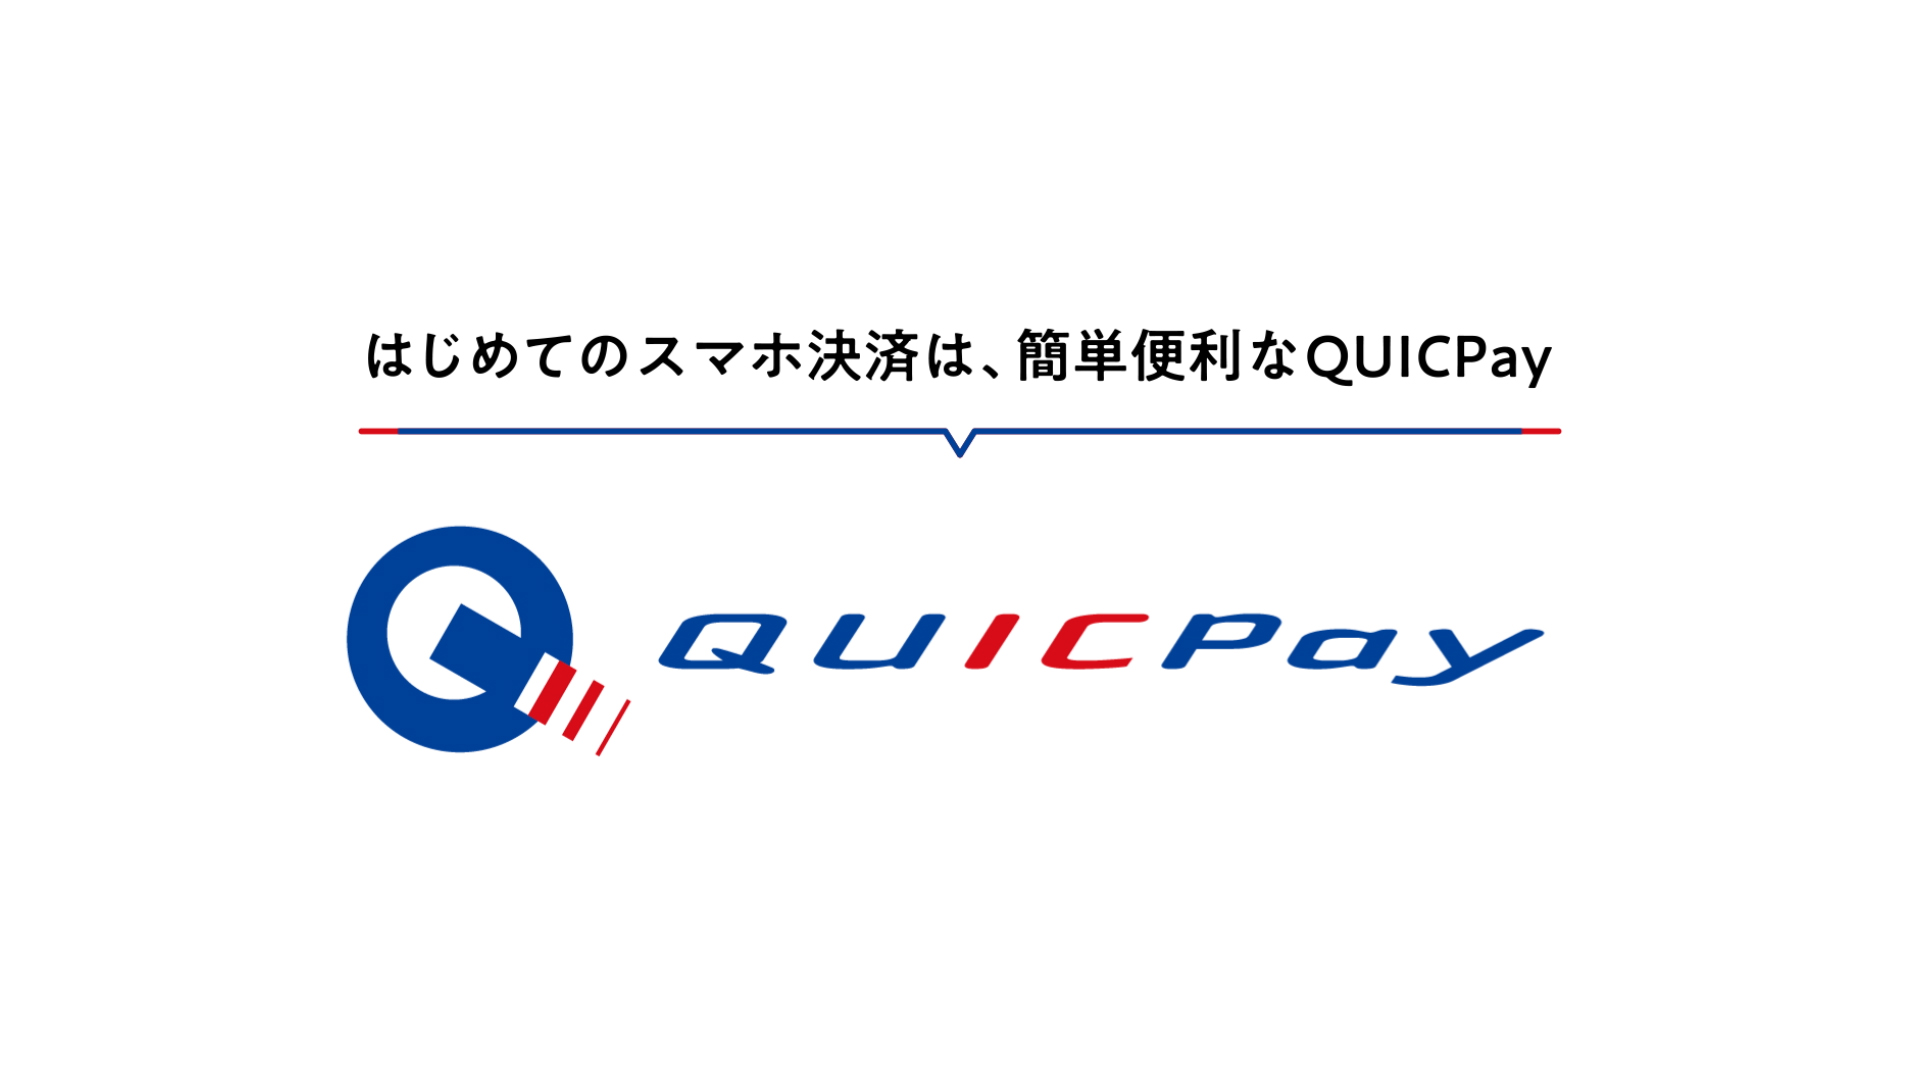 QUICPay webCM details